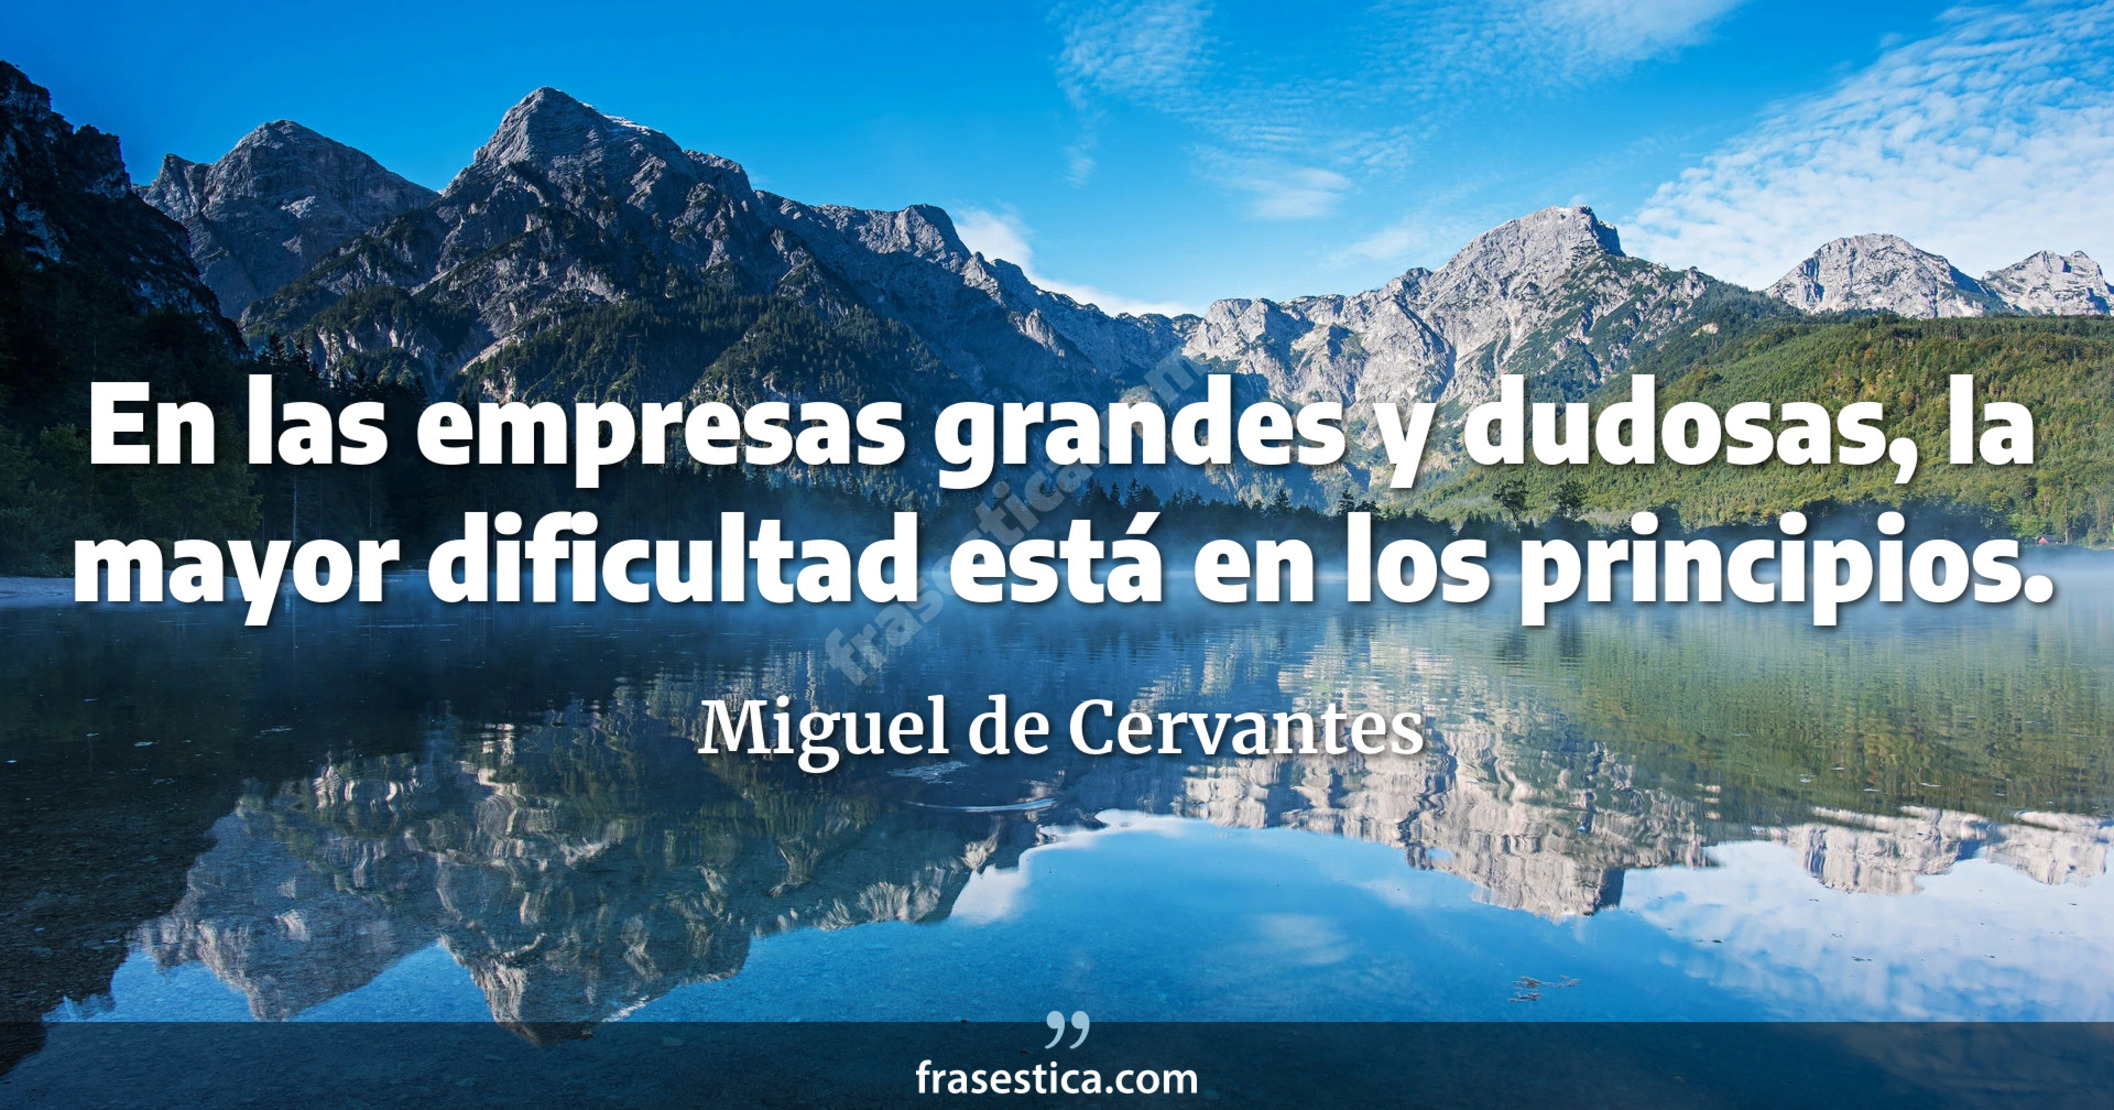 En las empresas grandes y dudosas, la mayor dificultad está en los principios. - Miguel de Cervantes